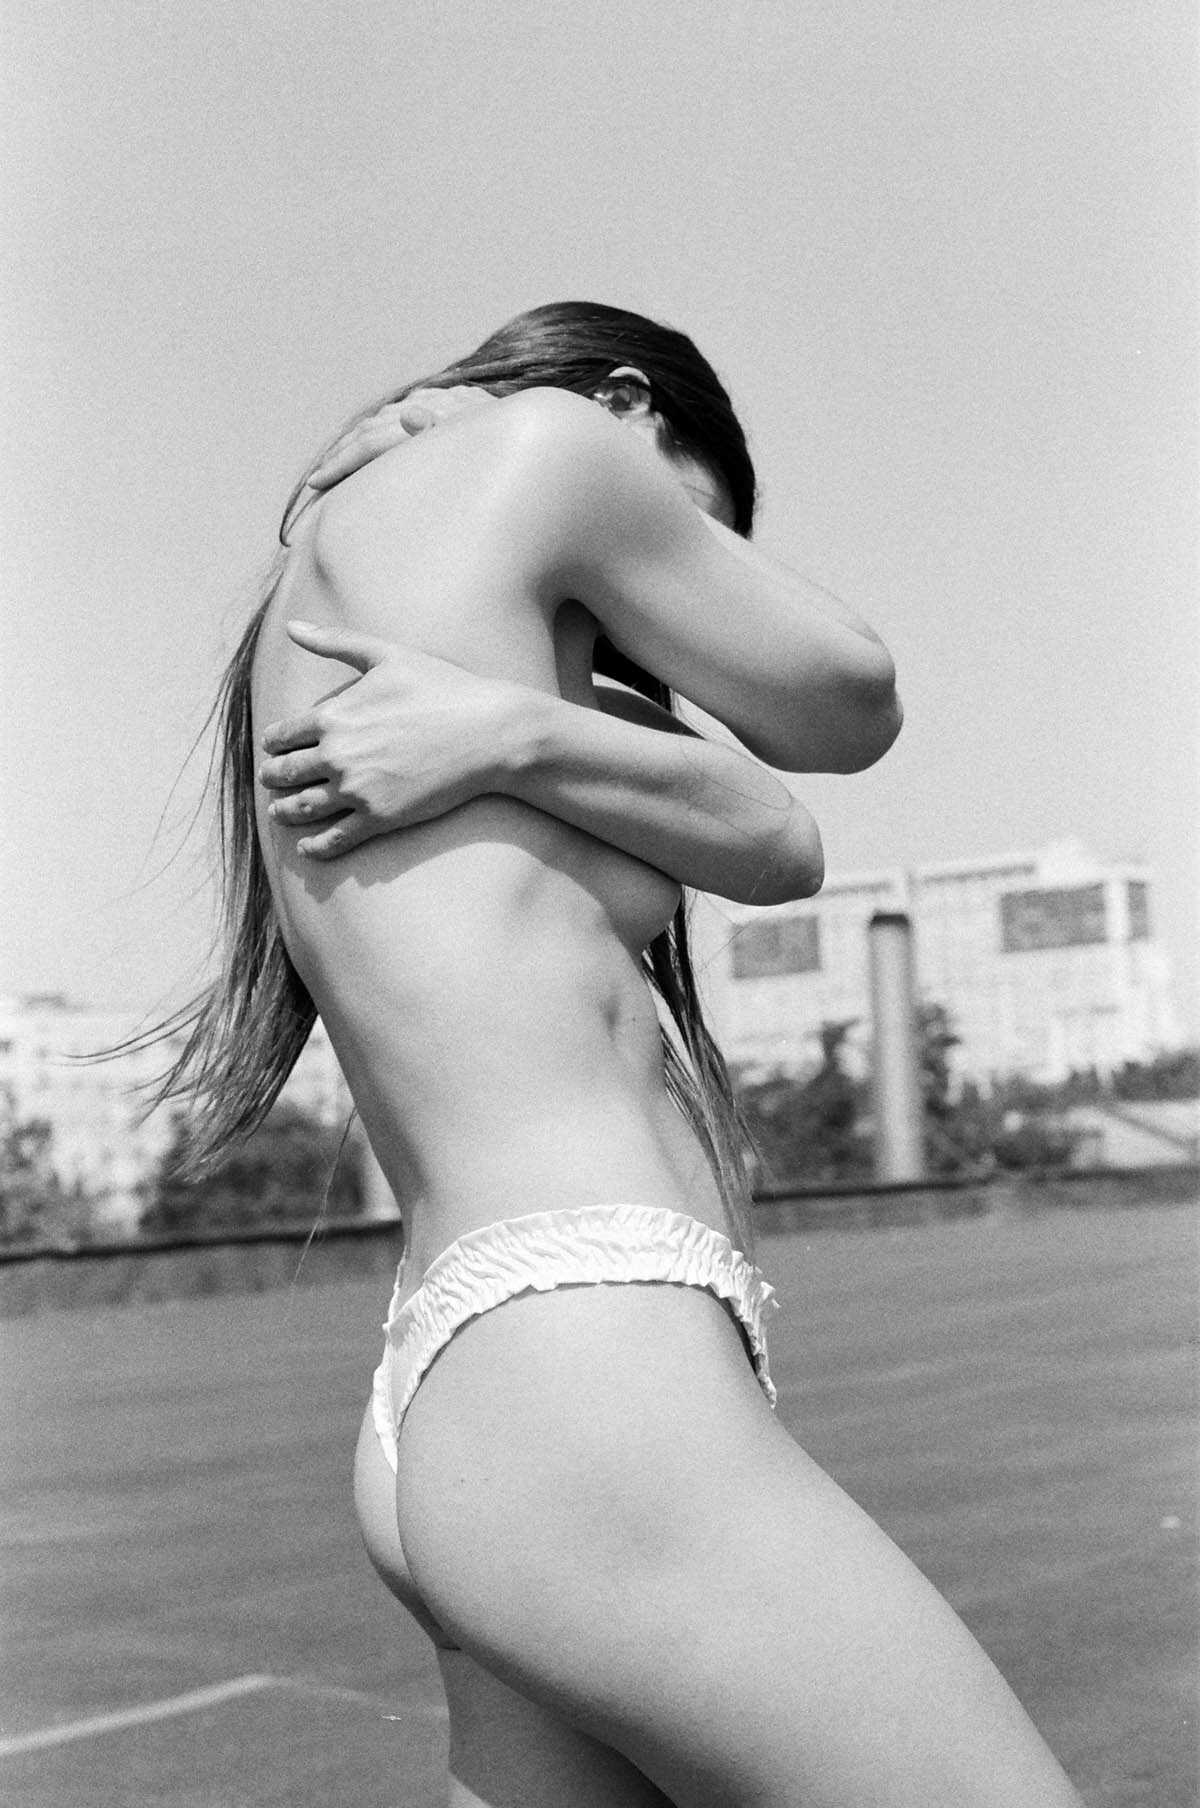 Γυμνες φωτογραφίες της μουνάρας Kaminskaya Kateryna